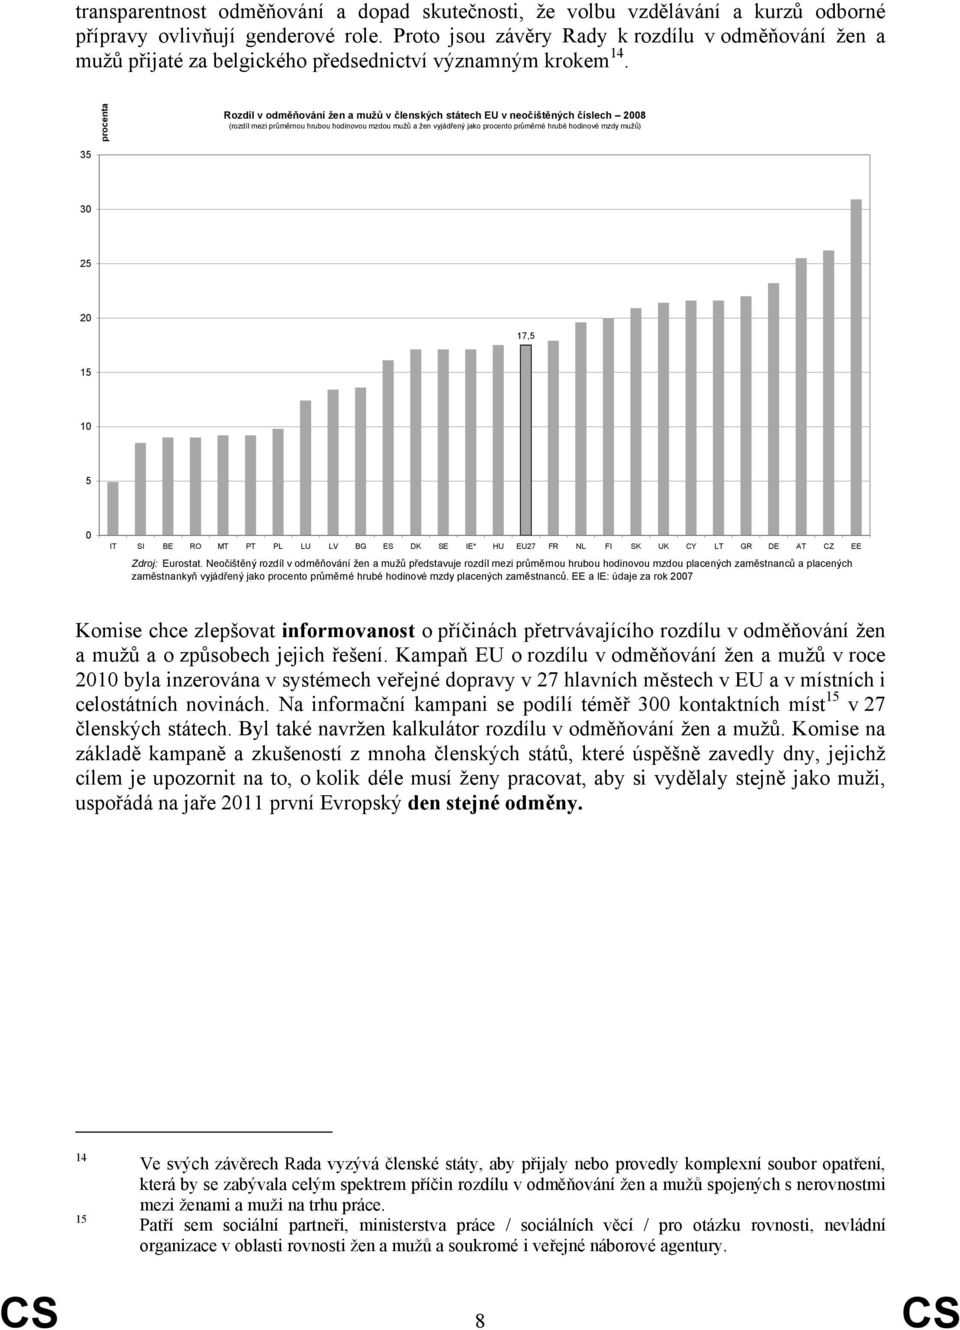 procenta Rozdíl v odměňování žen a mužů v členských státech EU v neočištěných číslech 08 (rozdíl mezi průměrnou hrubou hodinovou mzdou mužů a žen vyjádřený jako procento průměrné hrubé hodinové mzdy